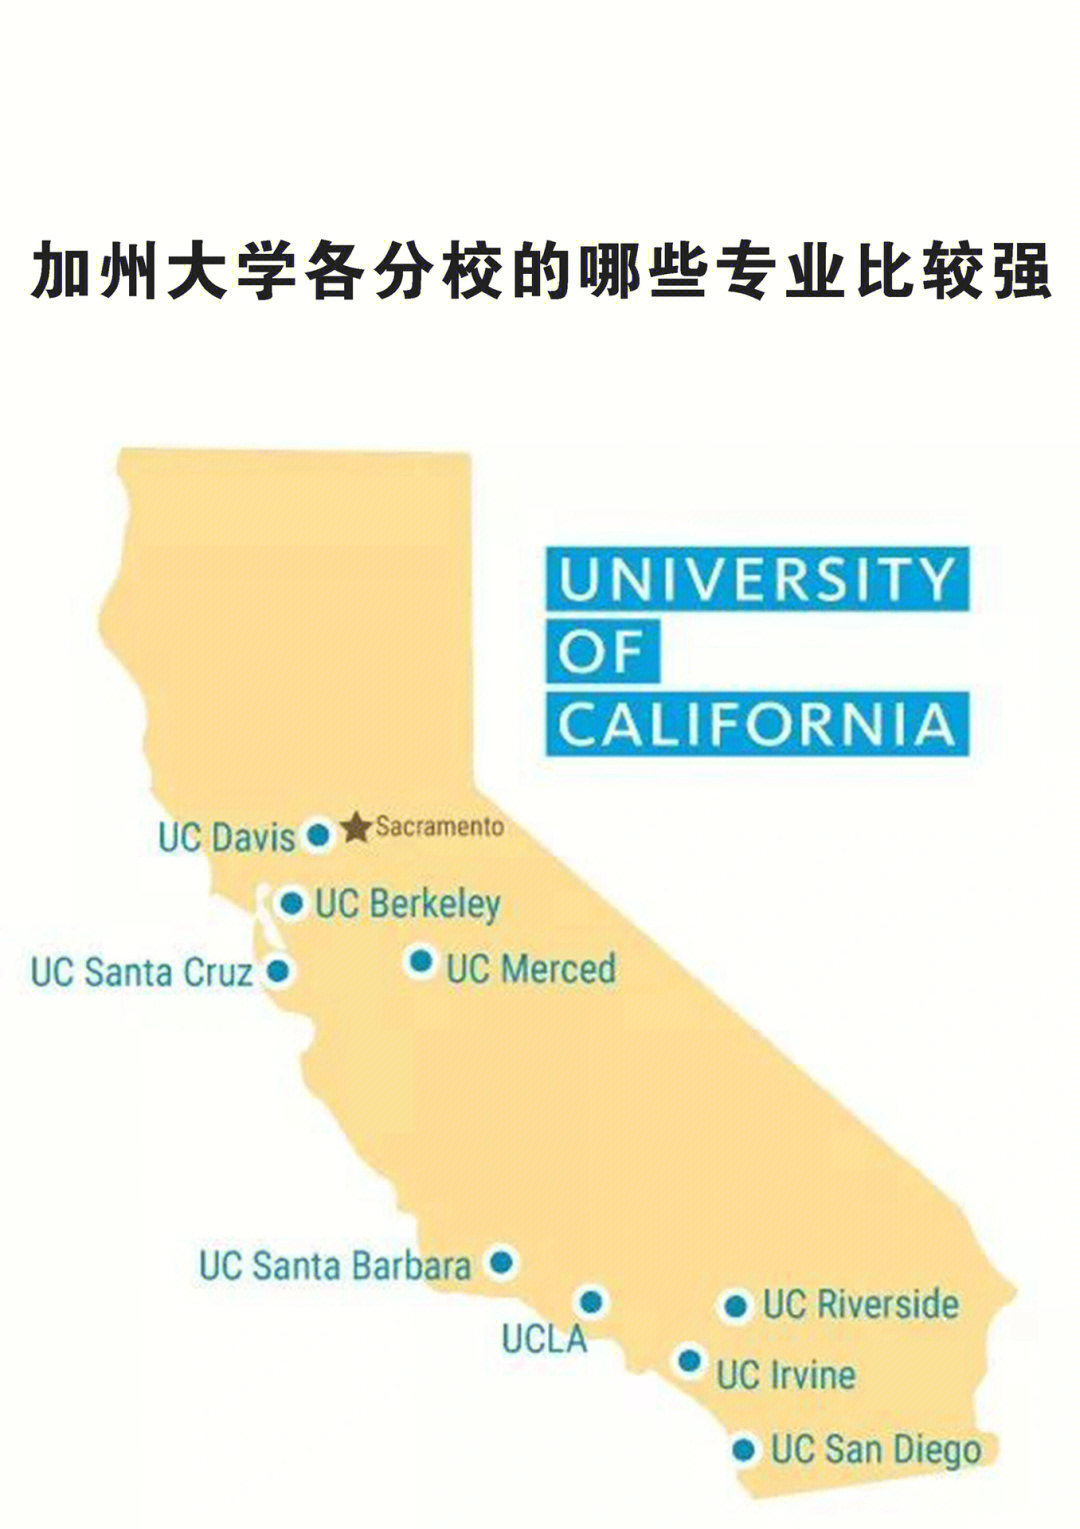 加州大学各分校的哪些专业比较强